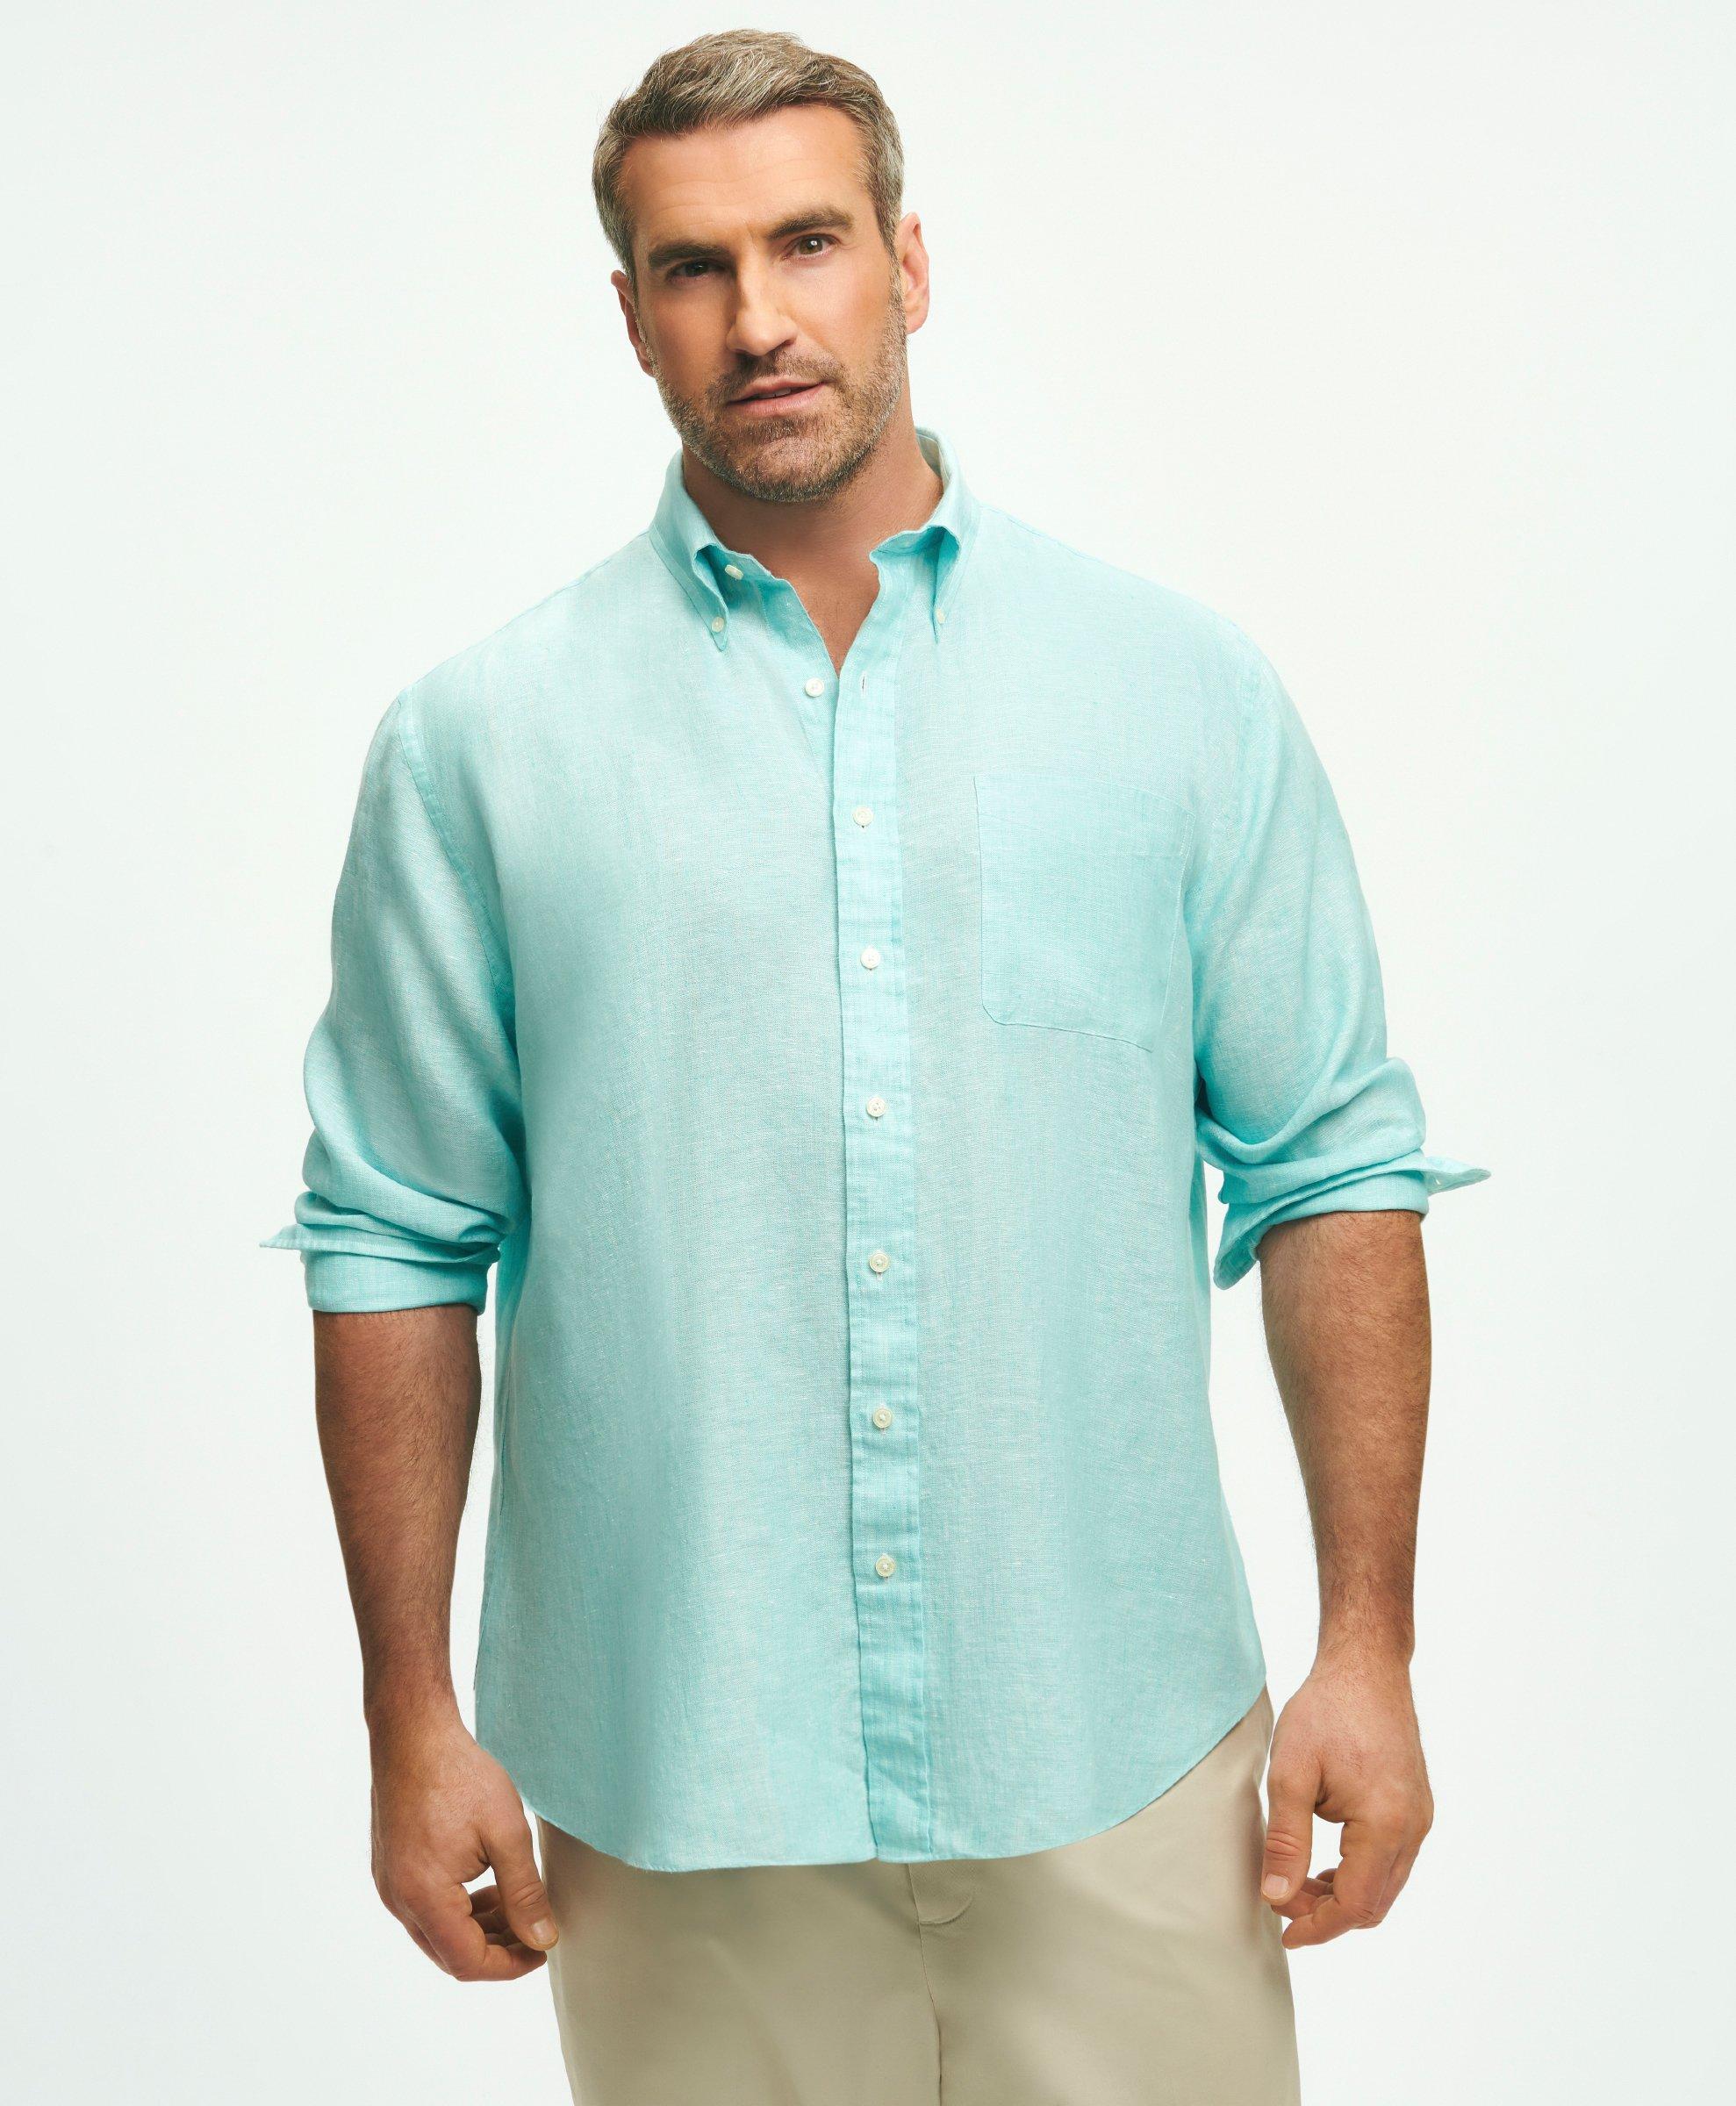 Brooks Brothers Big & Tall Sport Shirt, Irish Linen | Marine Blue | Size 1x